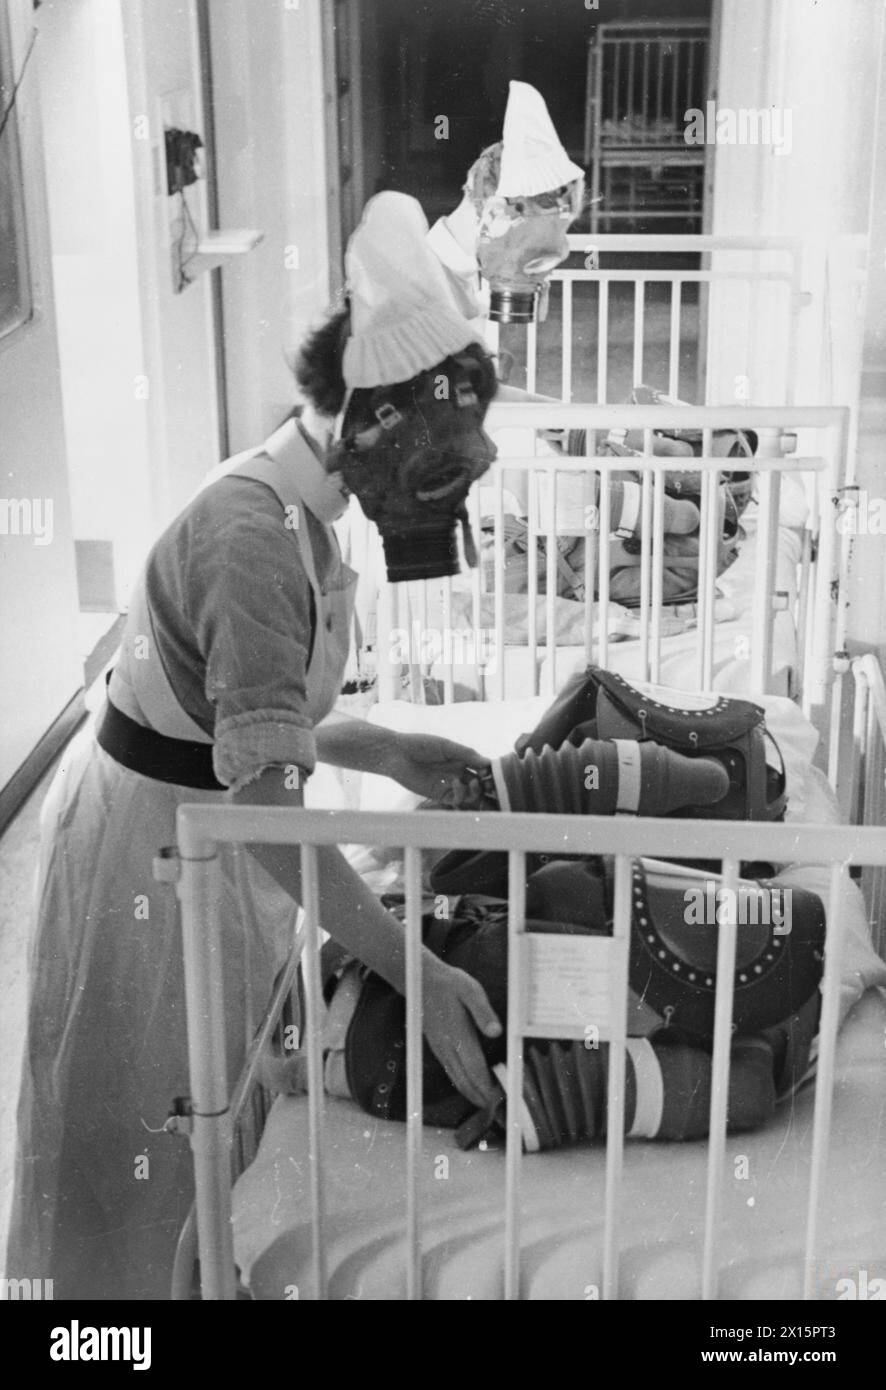 GASBOHRUNG IN Einem LONDONER KRANKENHAUS: GASMASKEN FÜR BABYS WERDEN GETESTET, ENGLAND, 1940 - zwei Krankenschwestern pumpen je den Balg eines Babygasatemgeräts, um das Kind, das die Maske trägt, mit Luft zu versorgen, während einer Gasbohrung in einem Londoner Krankenhaus, 1940 Stockfoto